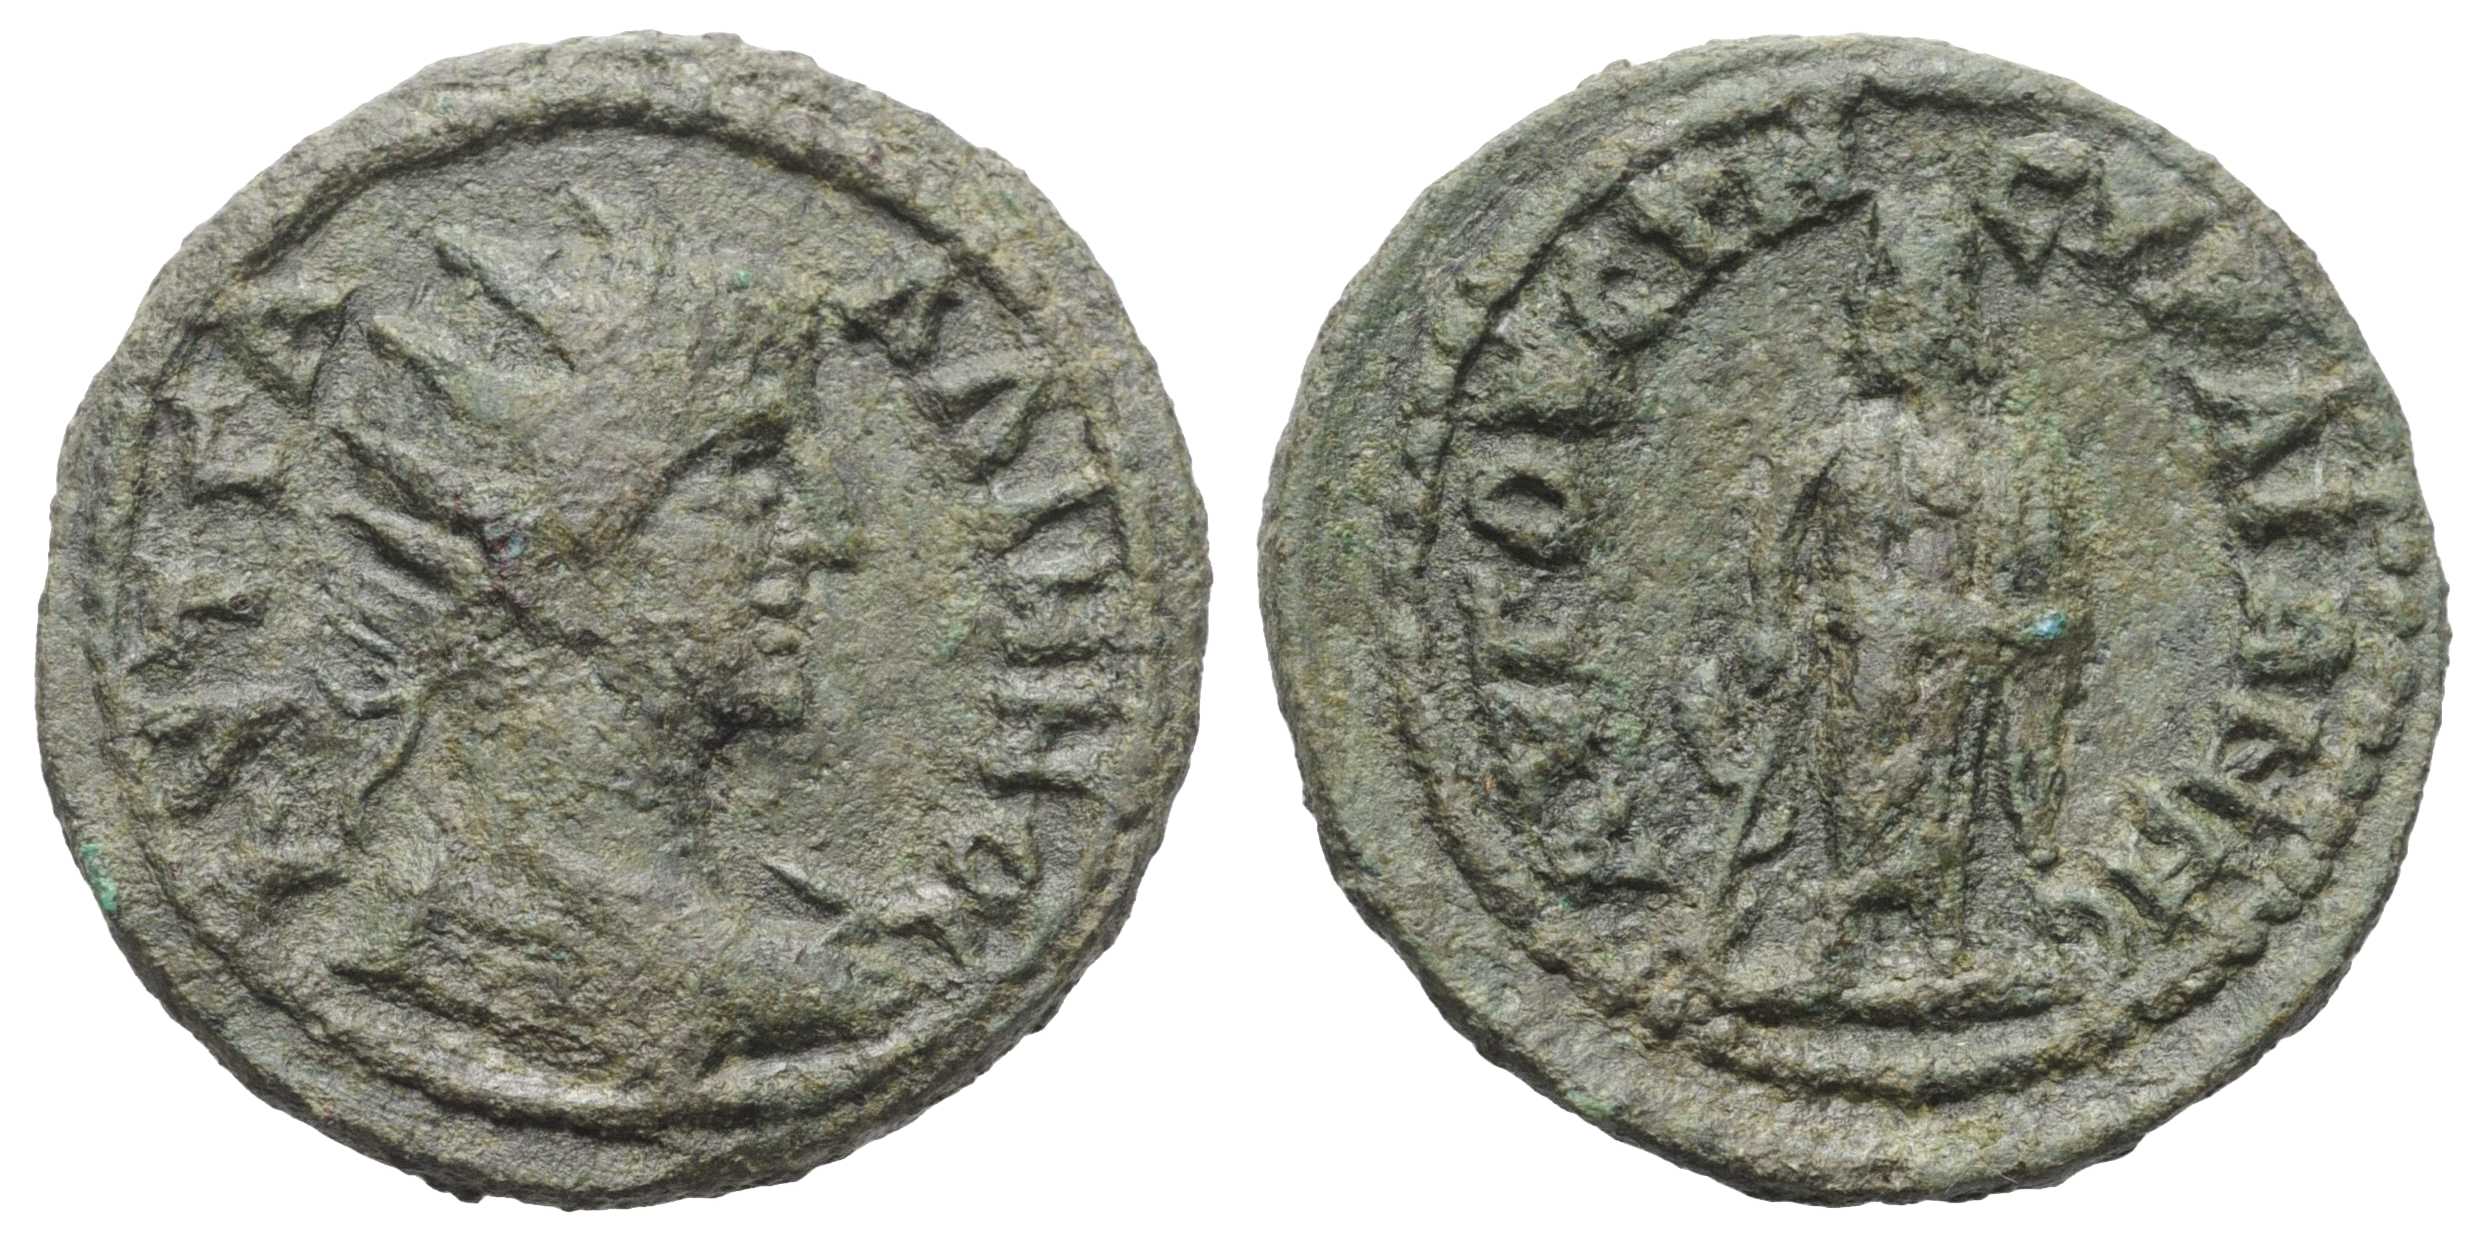 6720 Augusta Traiana Thracia Gallienus AE